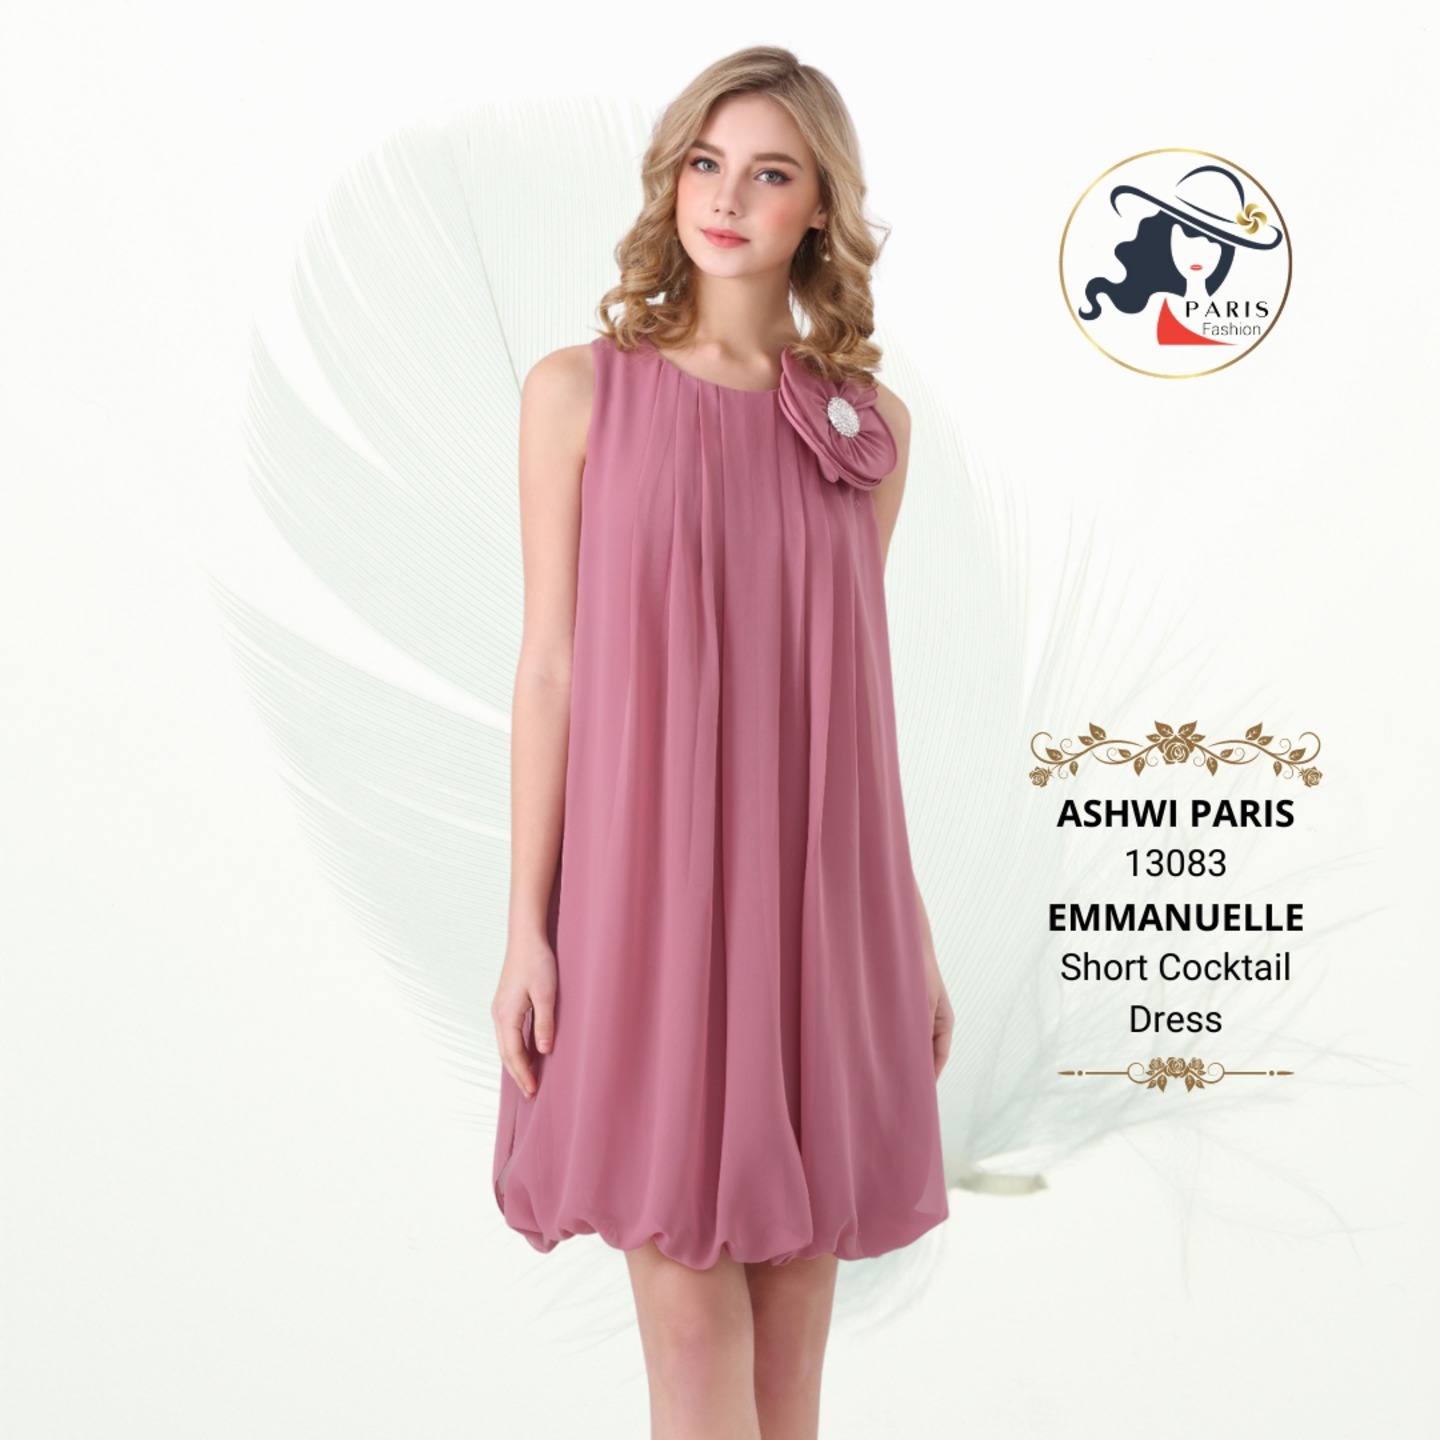 ASHWI PARIS 13083 EMMANUELLE Short Cocktail Dress